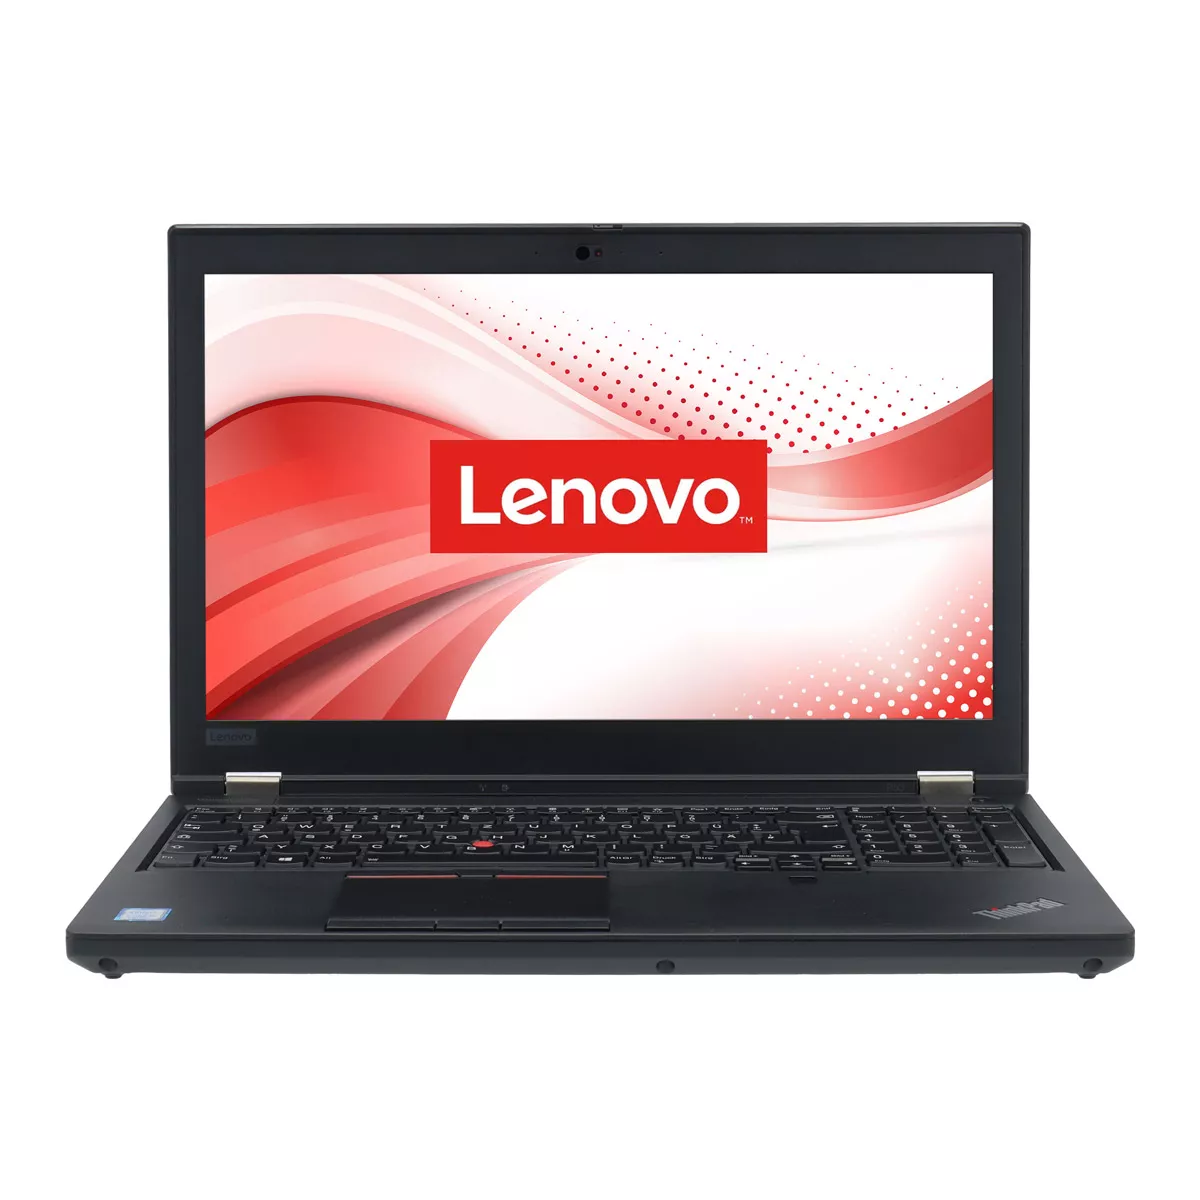 Lenovo ThinkPad P53 Core i7 9750H nVidia Quadro T1000M 32 GB 500 GB M.2 SSD Webcam B